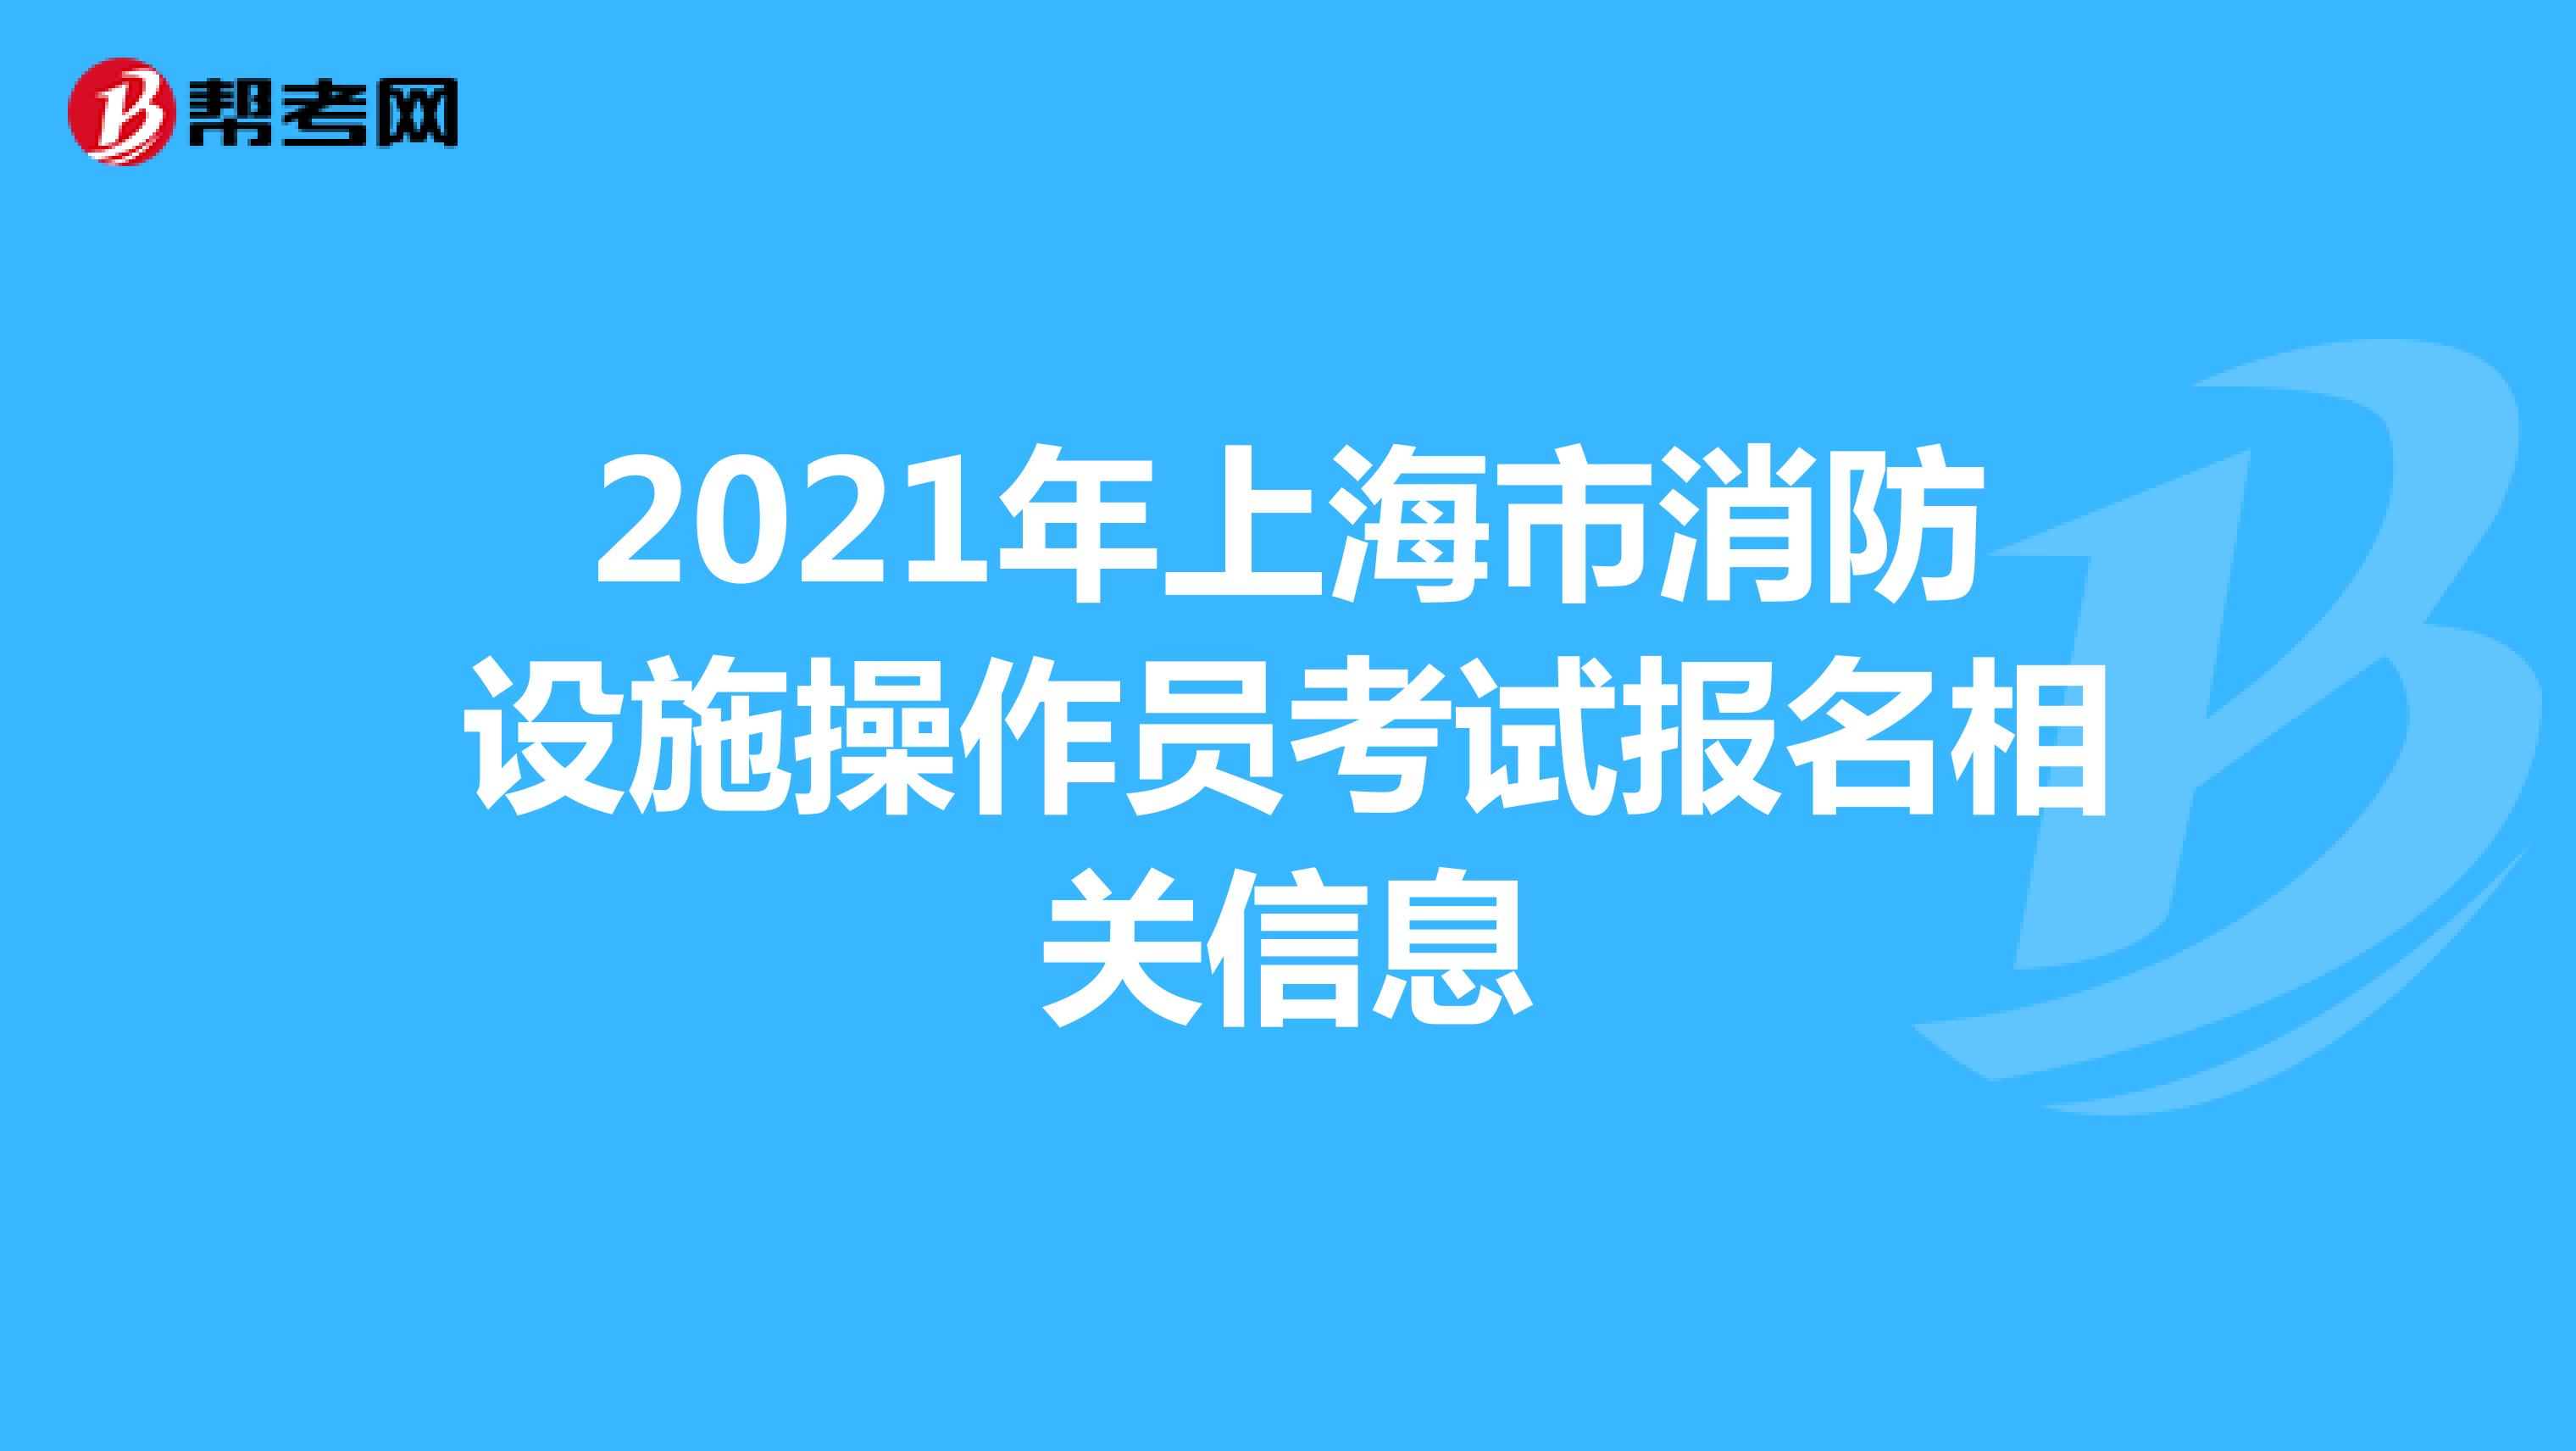 2021年上海市消防设施操作员考试报名相关信息